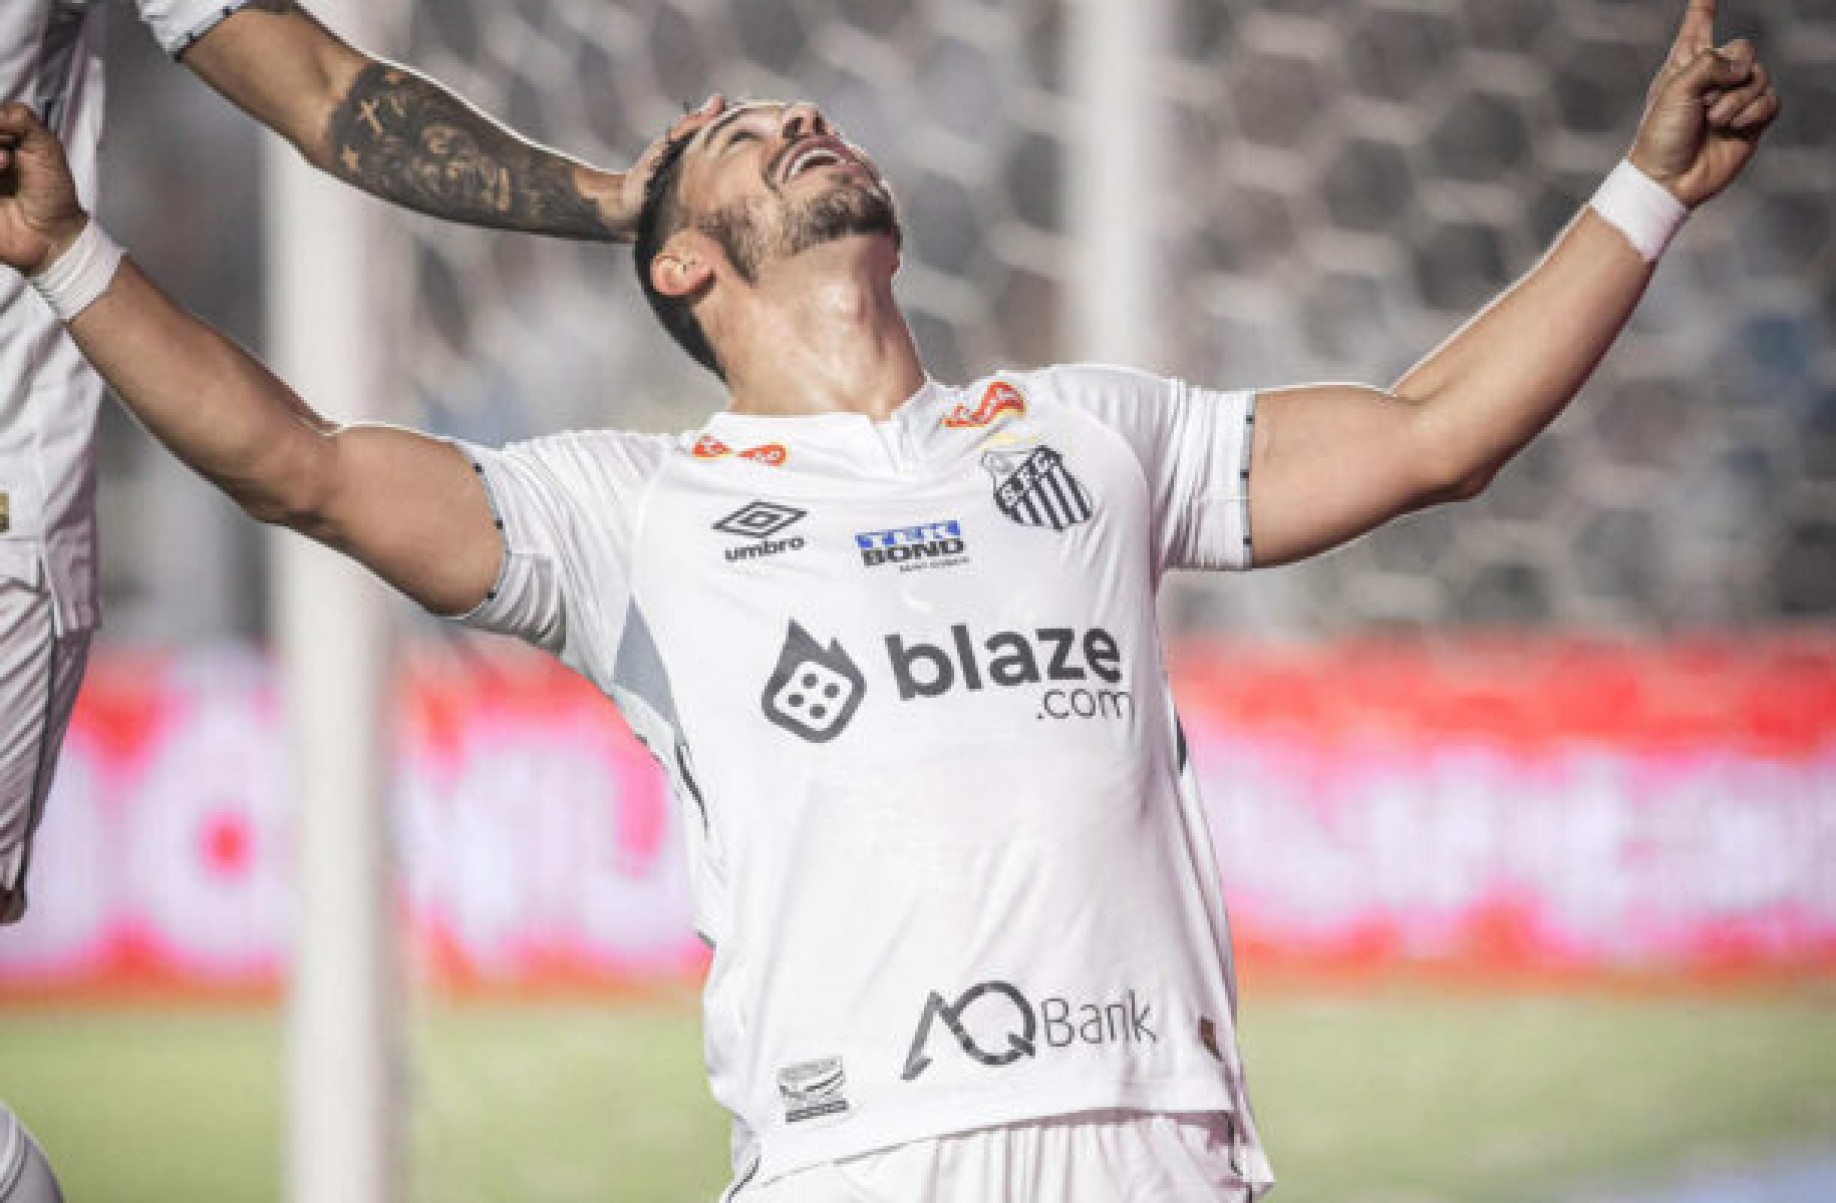 Santos goleia o Coritiba e dispara na liderança da Série B